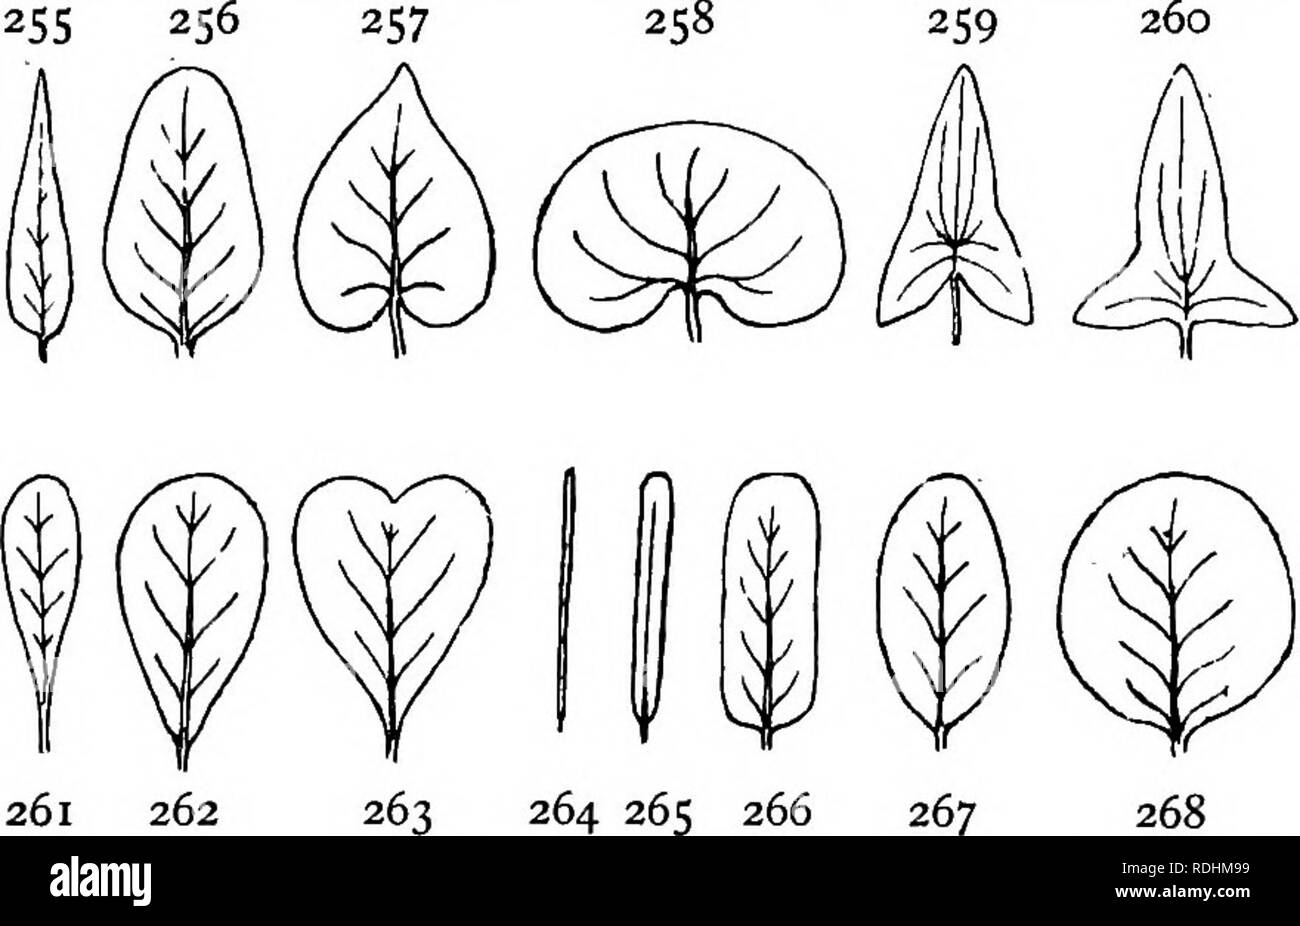 . Botanique élémentaire . La botanique. Feuilles 231 XII. Forme du limbe.-capillaire  = Ihin et souple, comme les poils d'animaux. EUlform  = thread-like. Acicn^r (fig. 264). Linéaire (fig. 265).. En forme d'alêne =subulées. Lancéolées (fig. 255). De forme oblongue (fig. 266). Ellipti- cal (fig. 267). Ovées (fig. 256). Orbicular or rond (fig. 268).  = angulaire ayant trois ou plusieurs angles. Comme le deltoïde =lettre grecque A. obovales (fig. 262).  = cunéiforme en forme de coin et attachée par son point pour le pétiole. Spathulate (fig. 261). Cordé (fig. 257). Obcordate (fig. 263). Réniforme (fig. 258). Auriculé, quand la base du limbe Banque D'Images